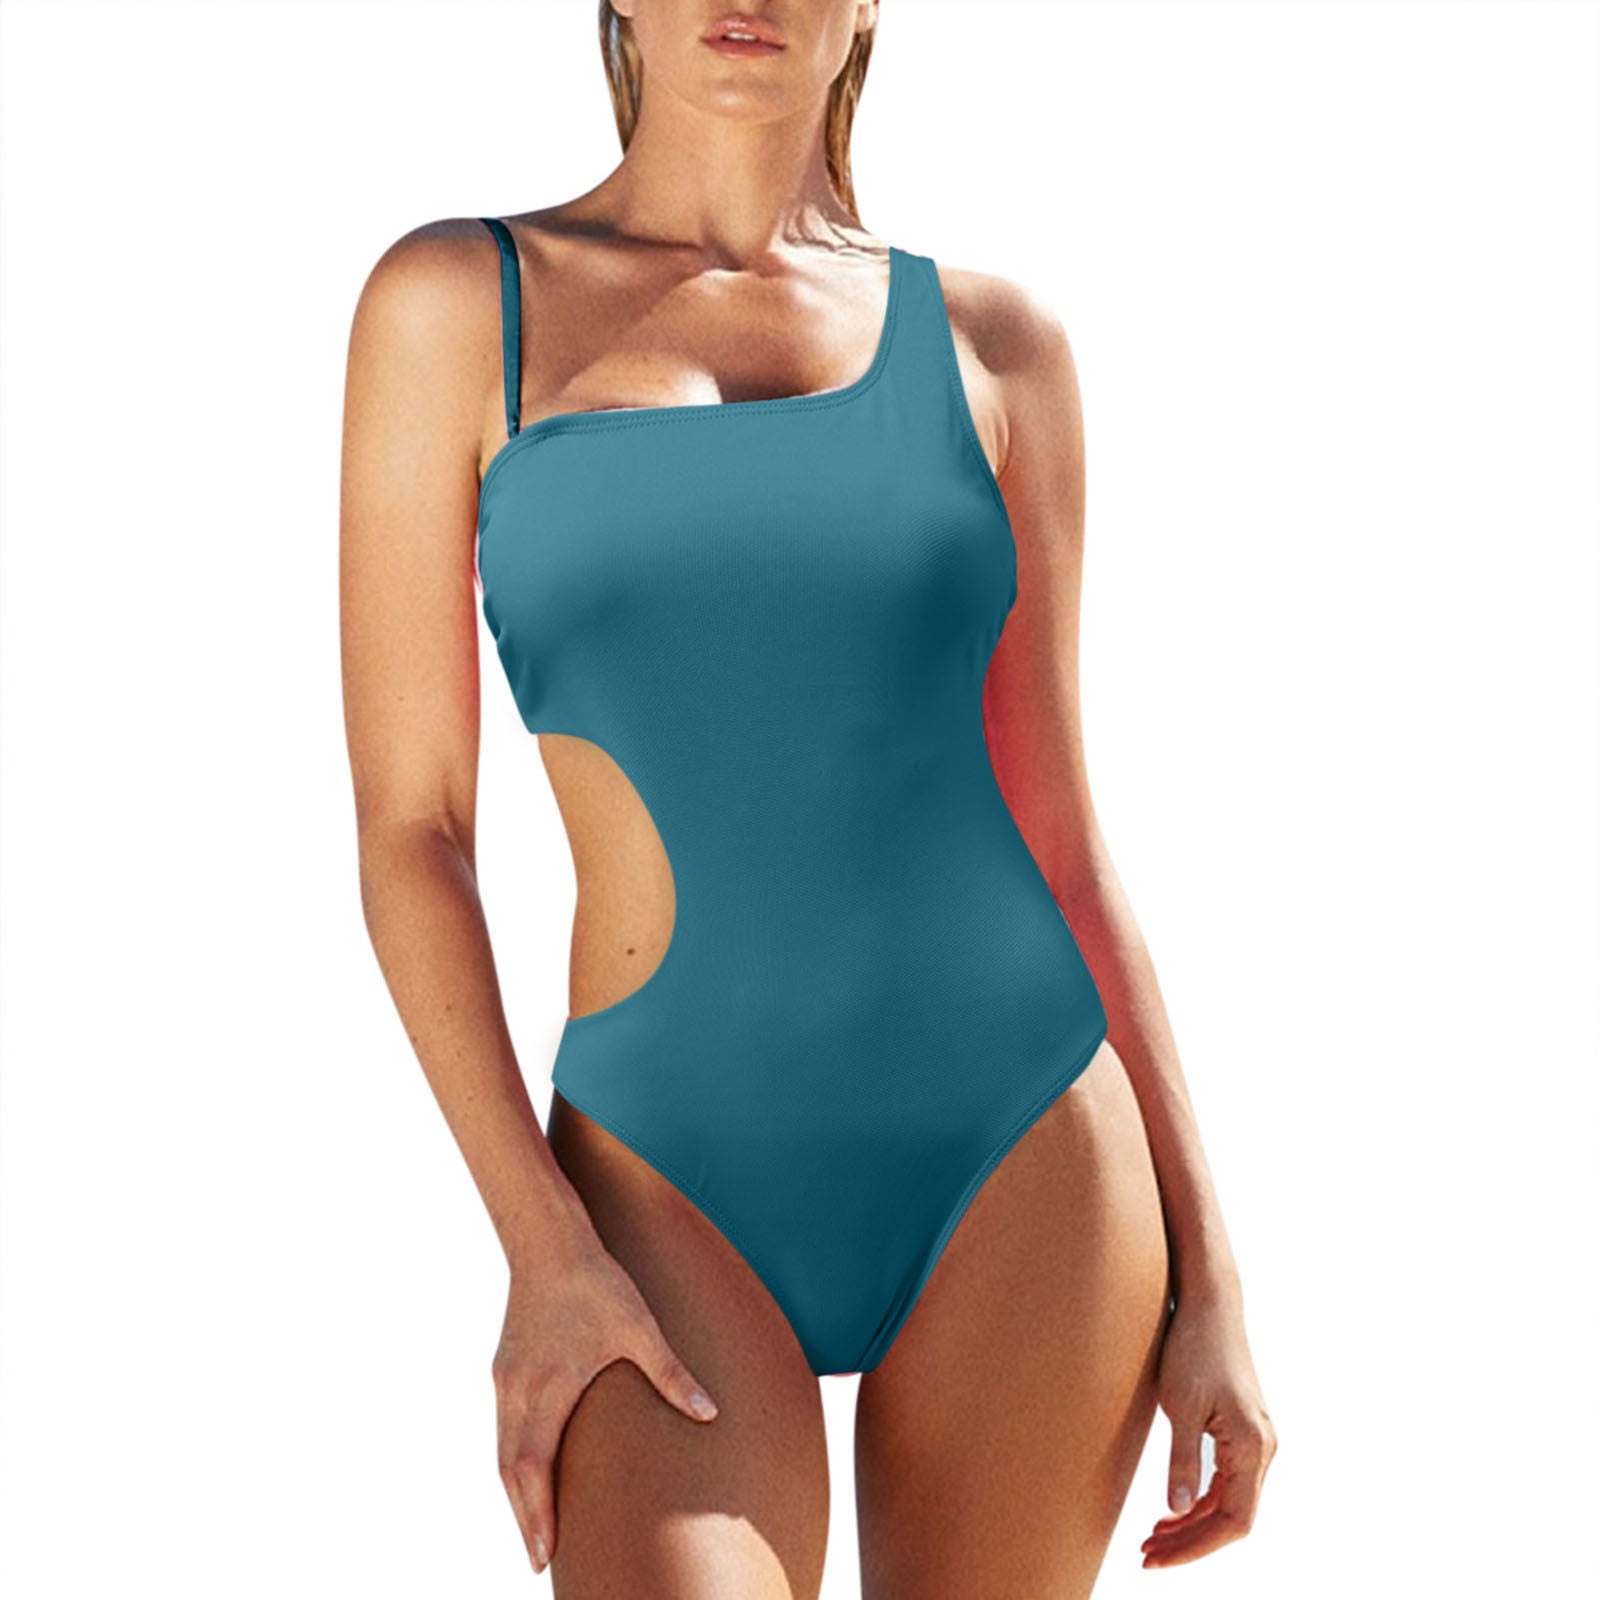 Velvet Designer Bikinis Brand Plaid 3 PCS Bikini Suit Skirt Chic